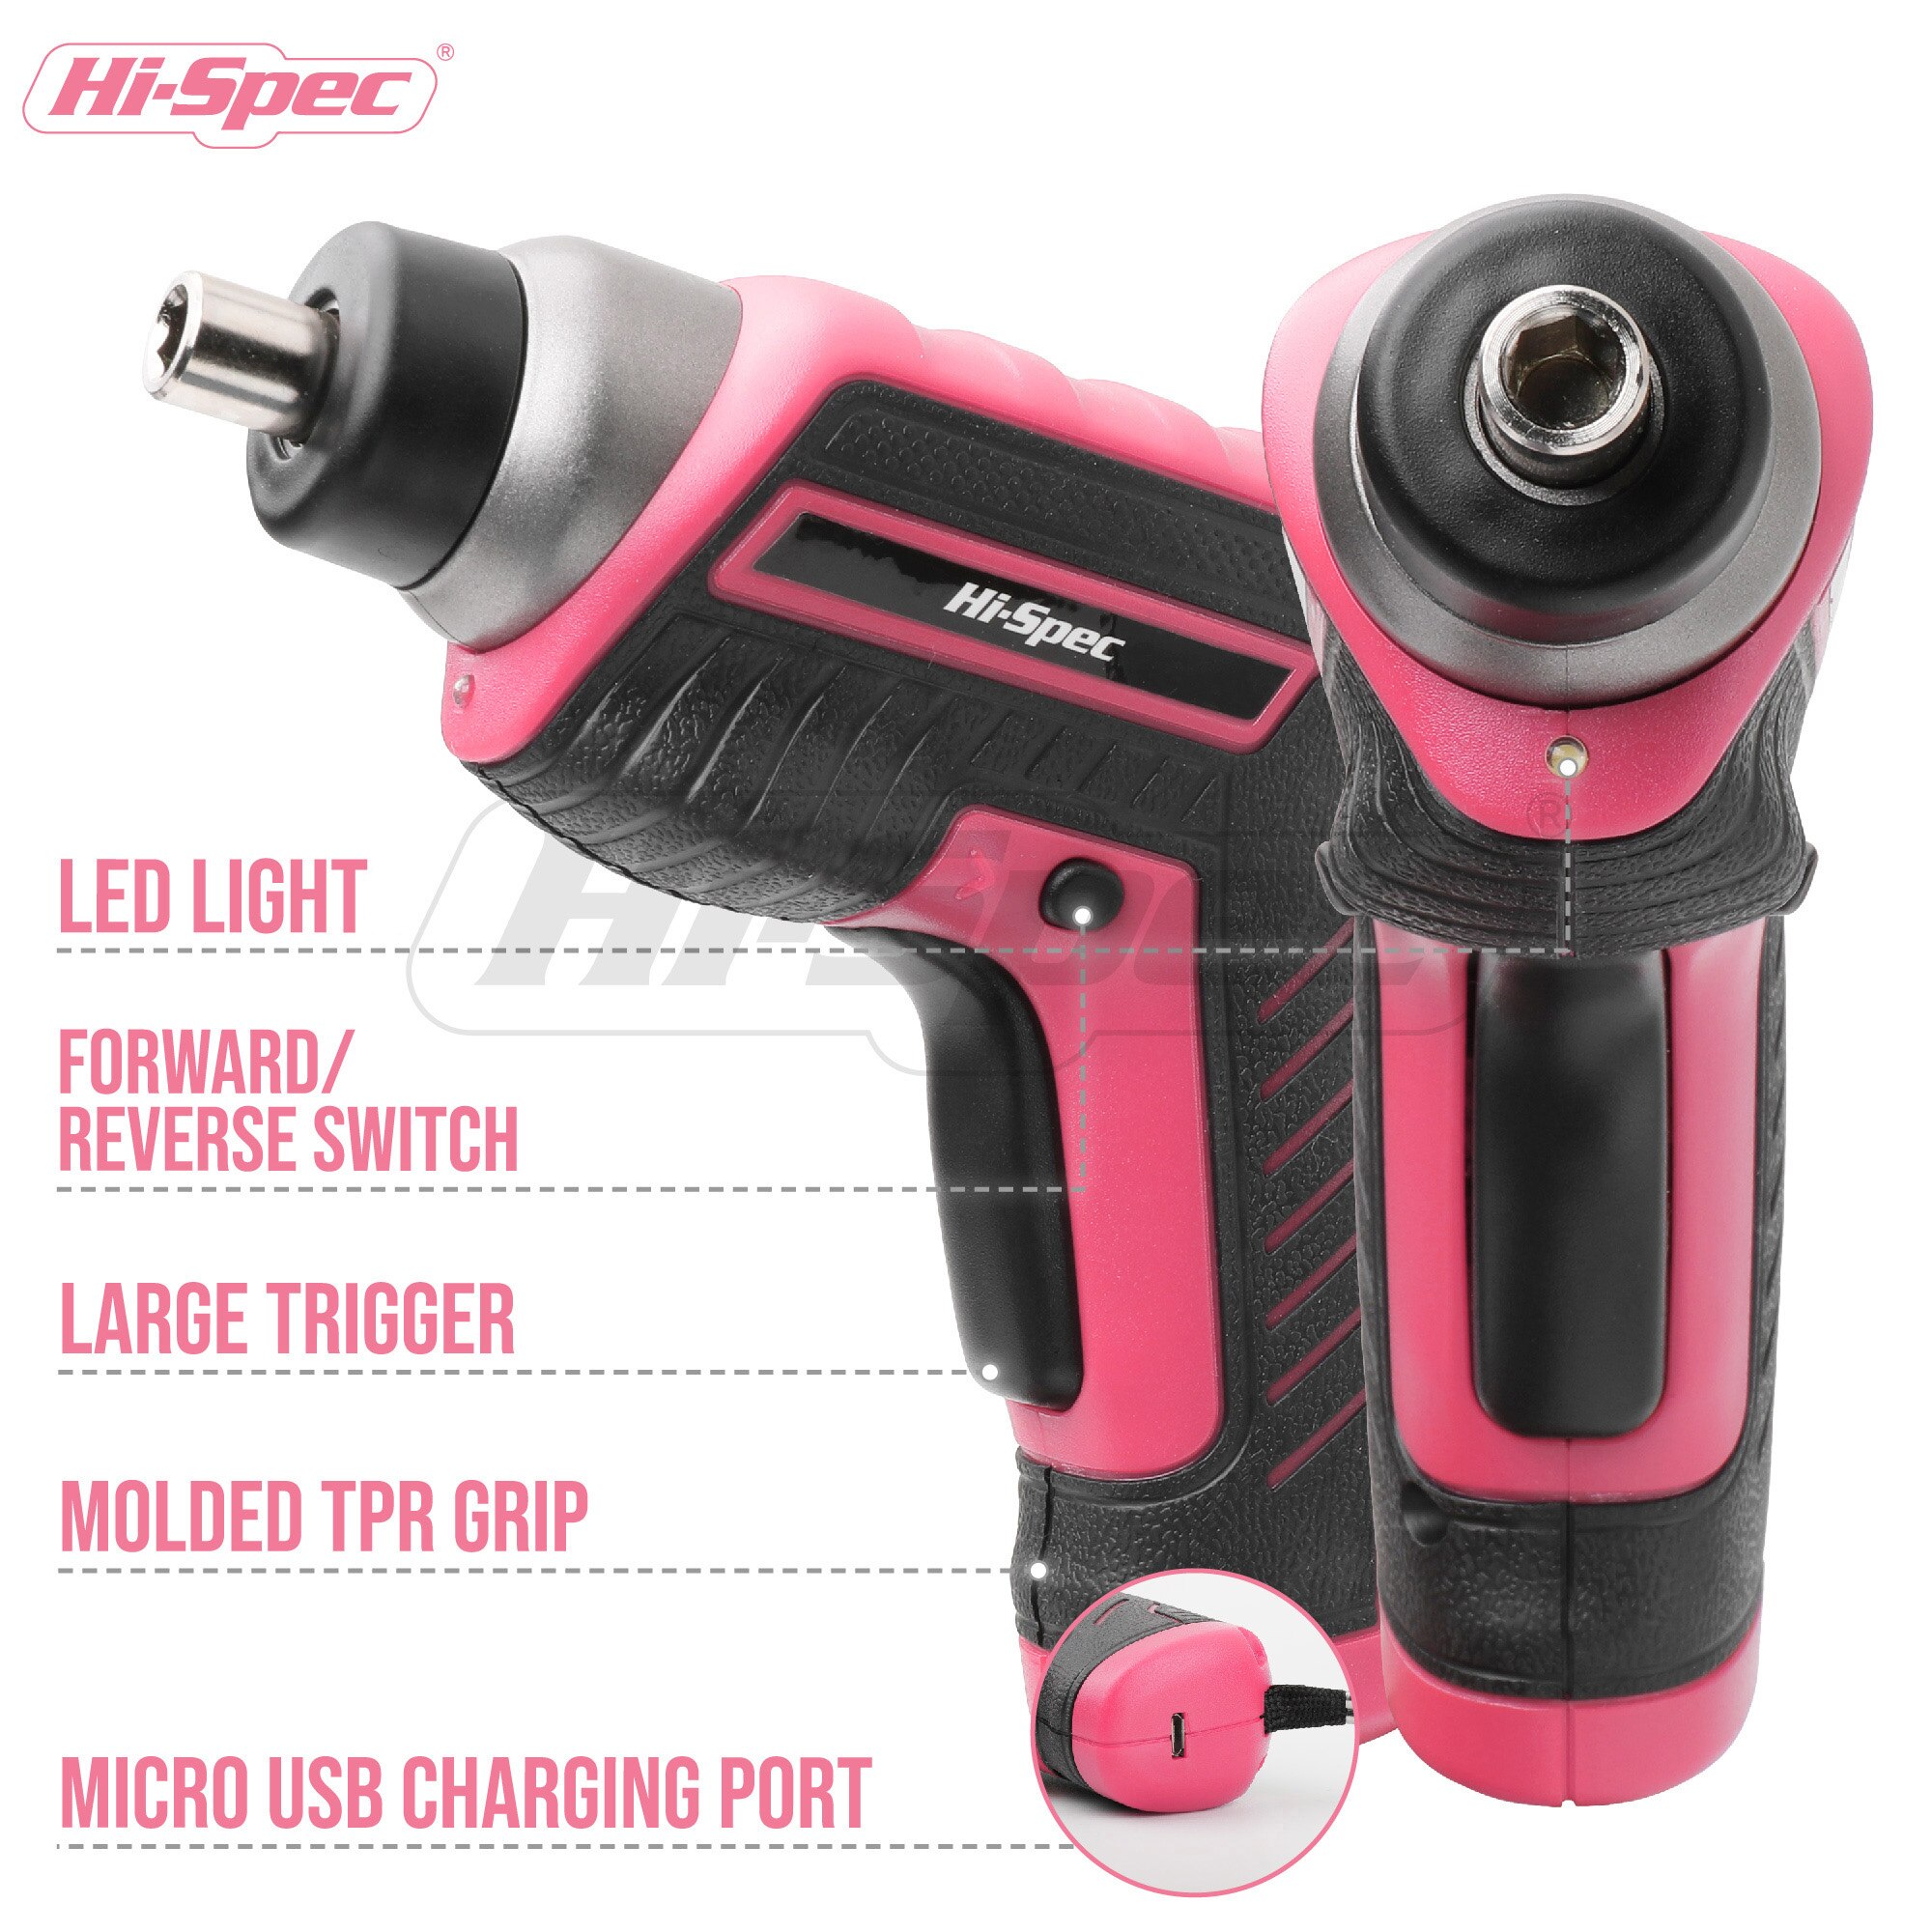 Hi-spec 35pc 4v usb elektrisk skruetrækker li-ion pink hjem diy husholdningsværktøj sæt håndværktøjssæt til gril dame kvinder